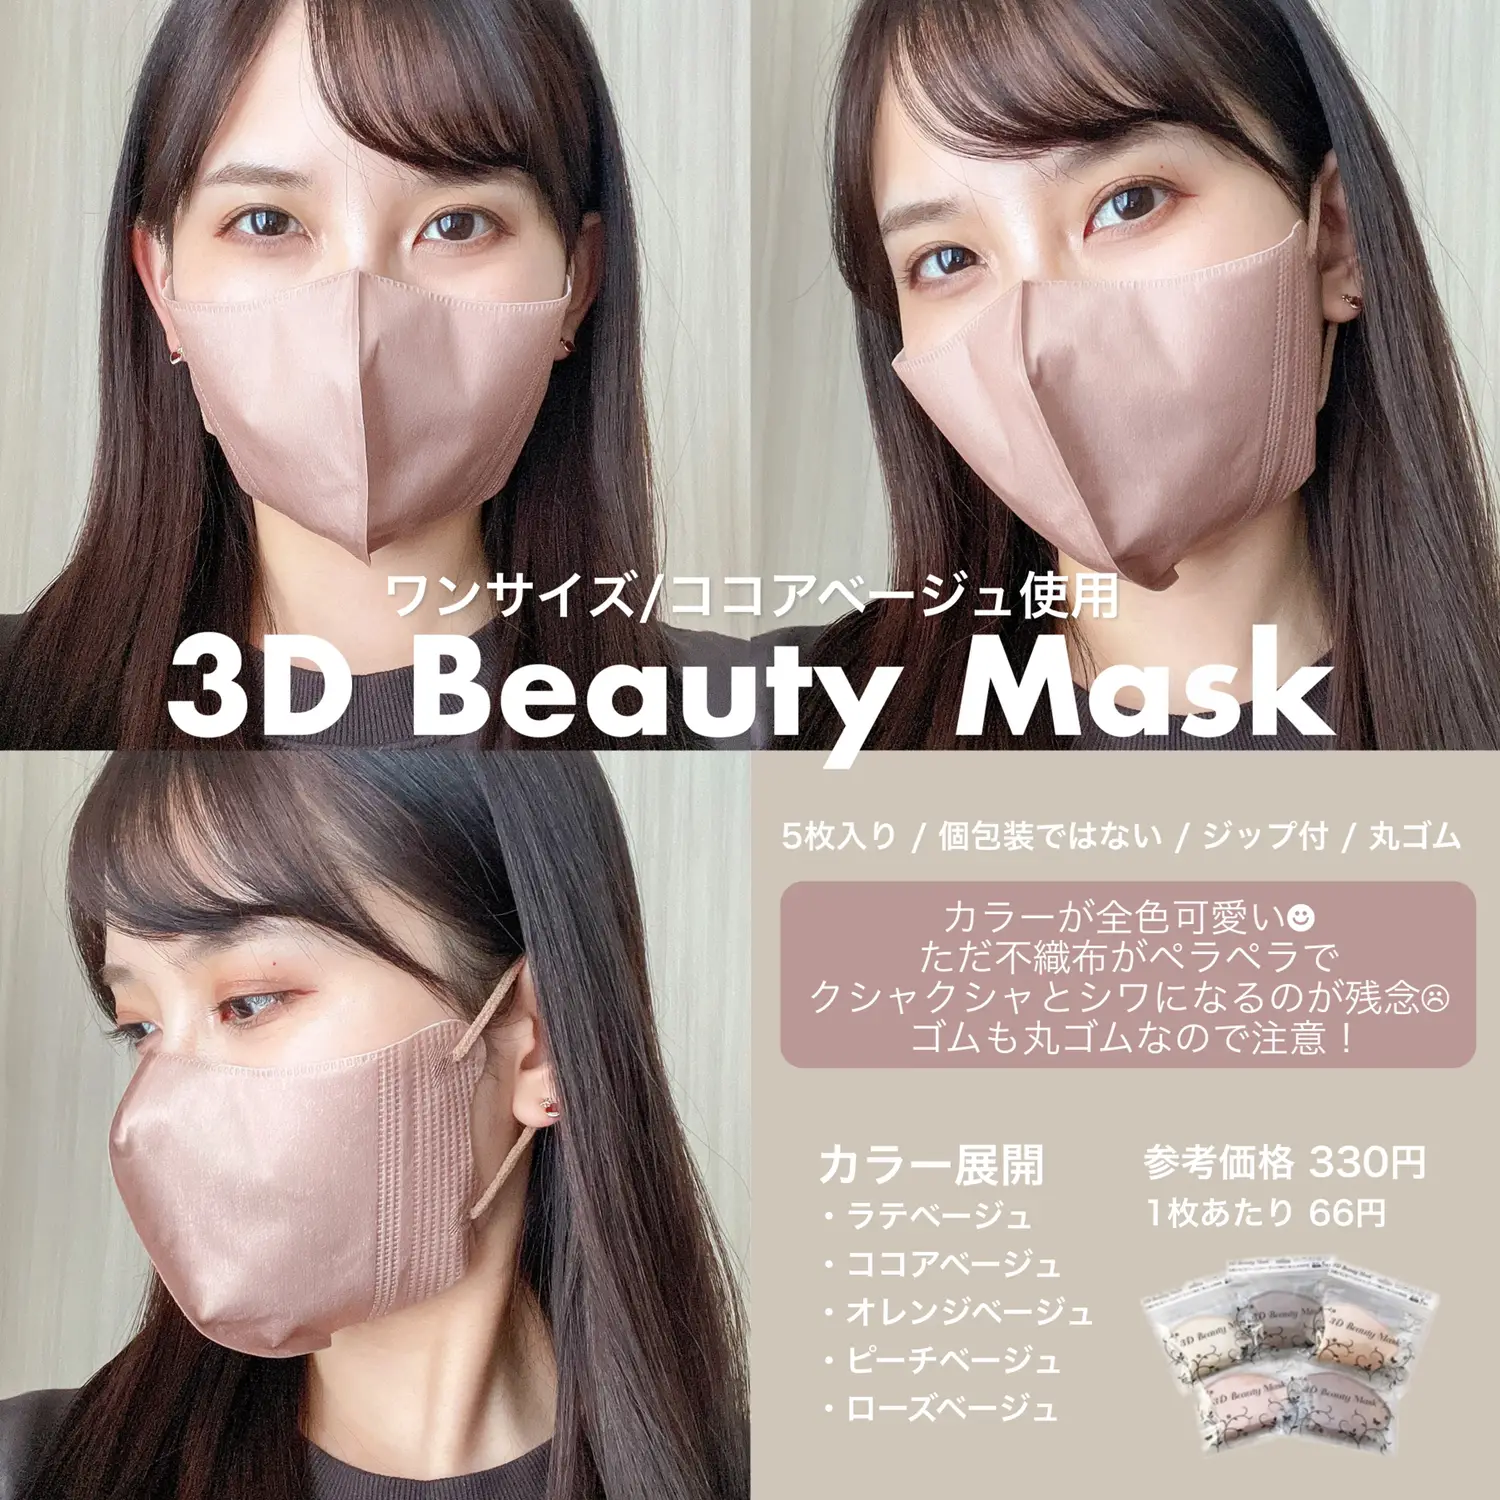 立体不織布マスク 着用画像比較 | Mi / さるみかが投稿したフォト